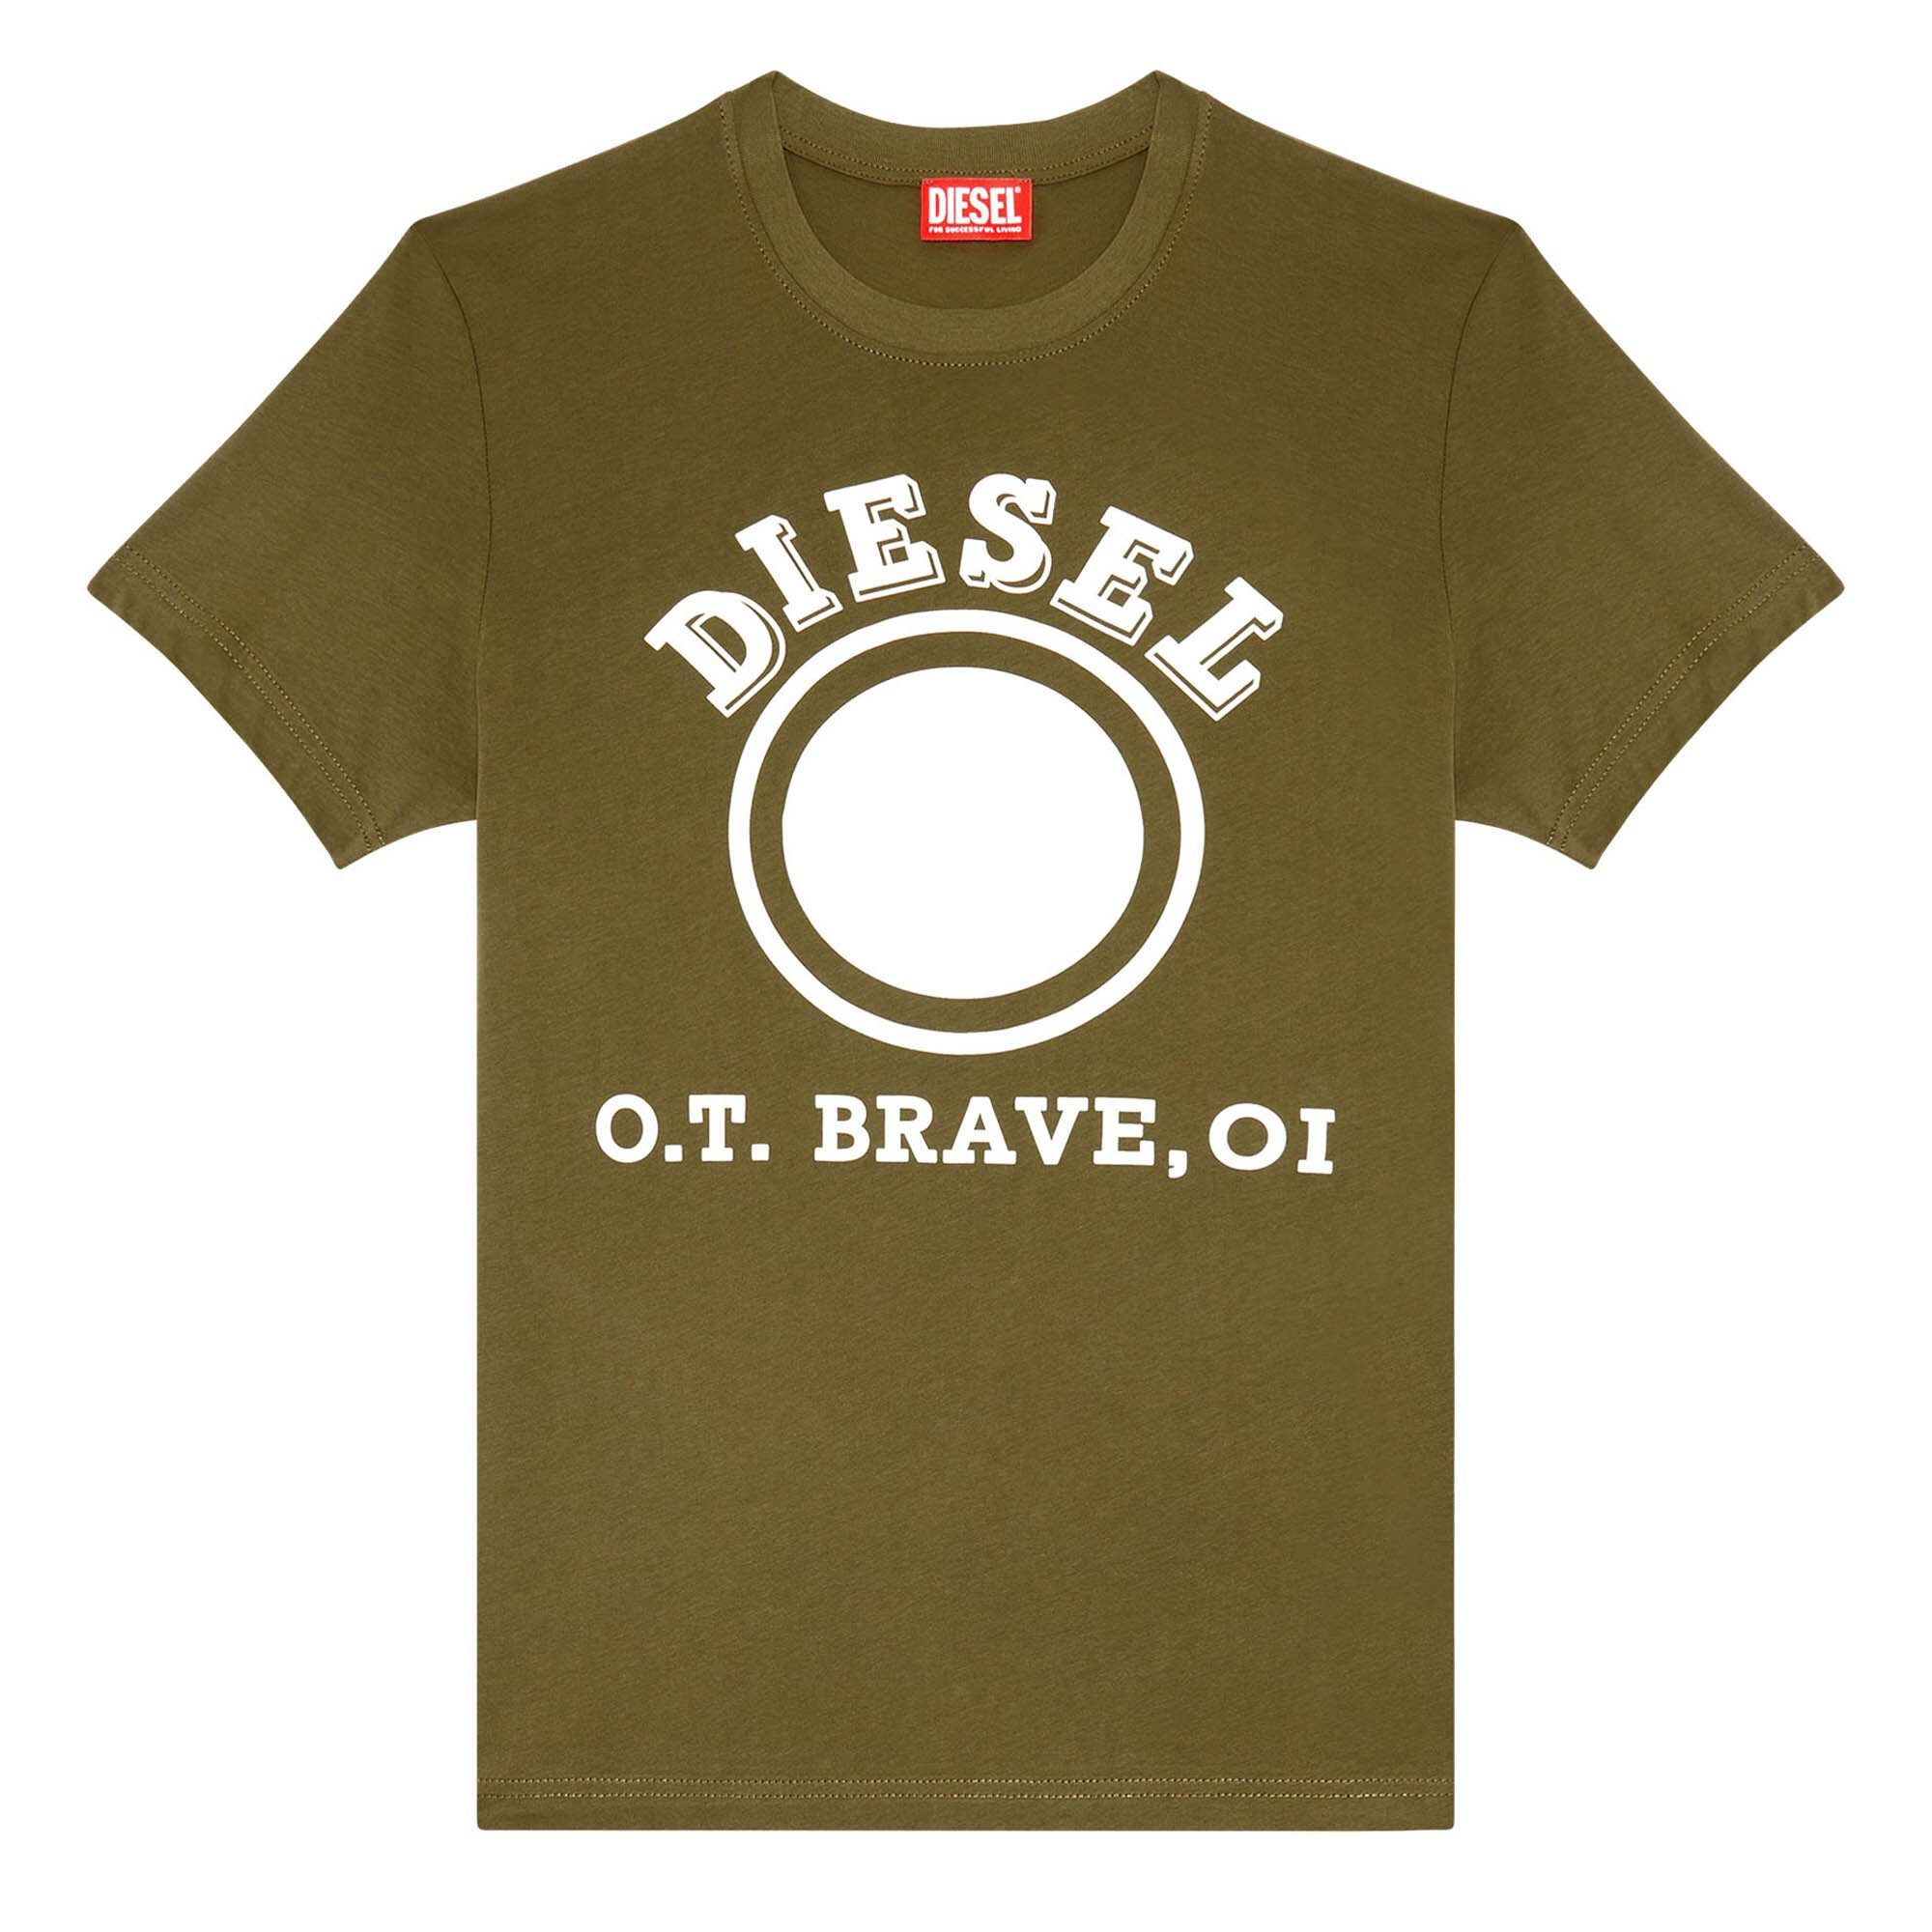 T-DIEGOR-K64, T-Shirt Kurzarm Grün/Weiß Diesel Rundhals, Herren T-Shirt -